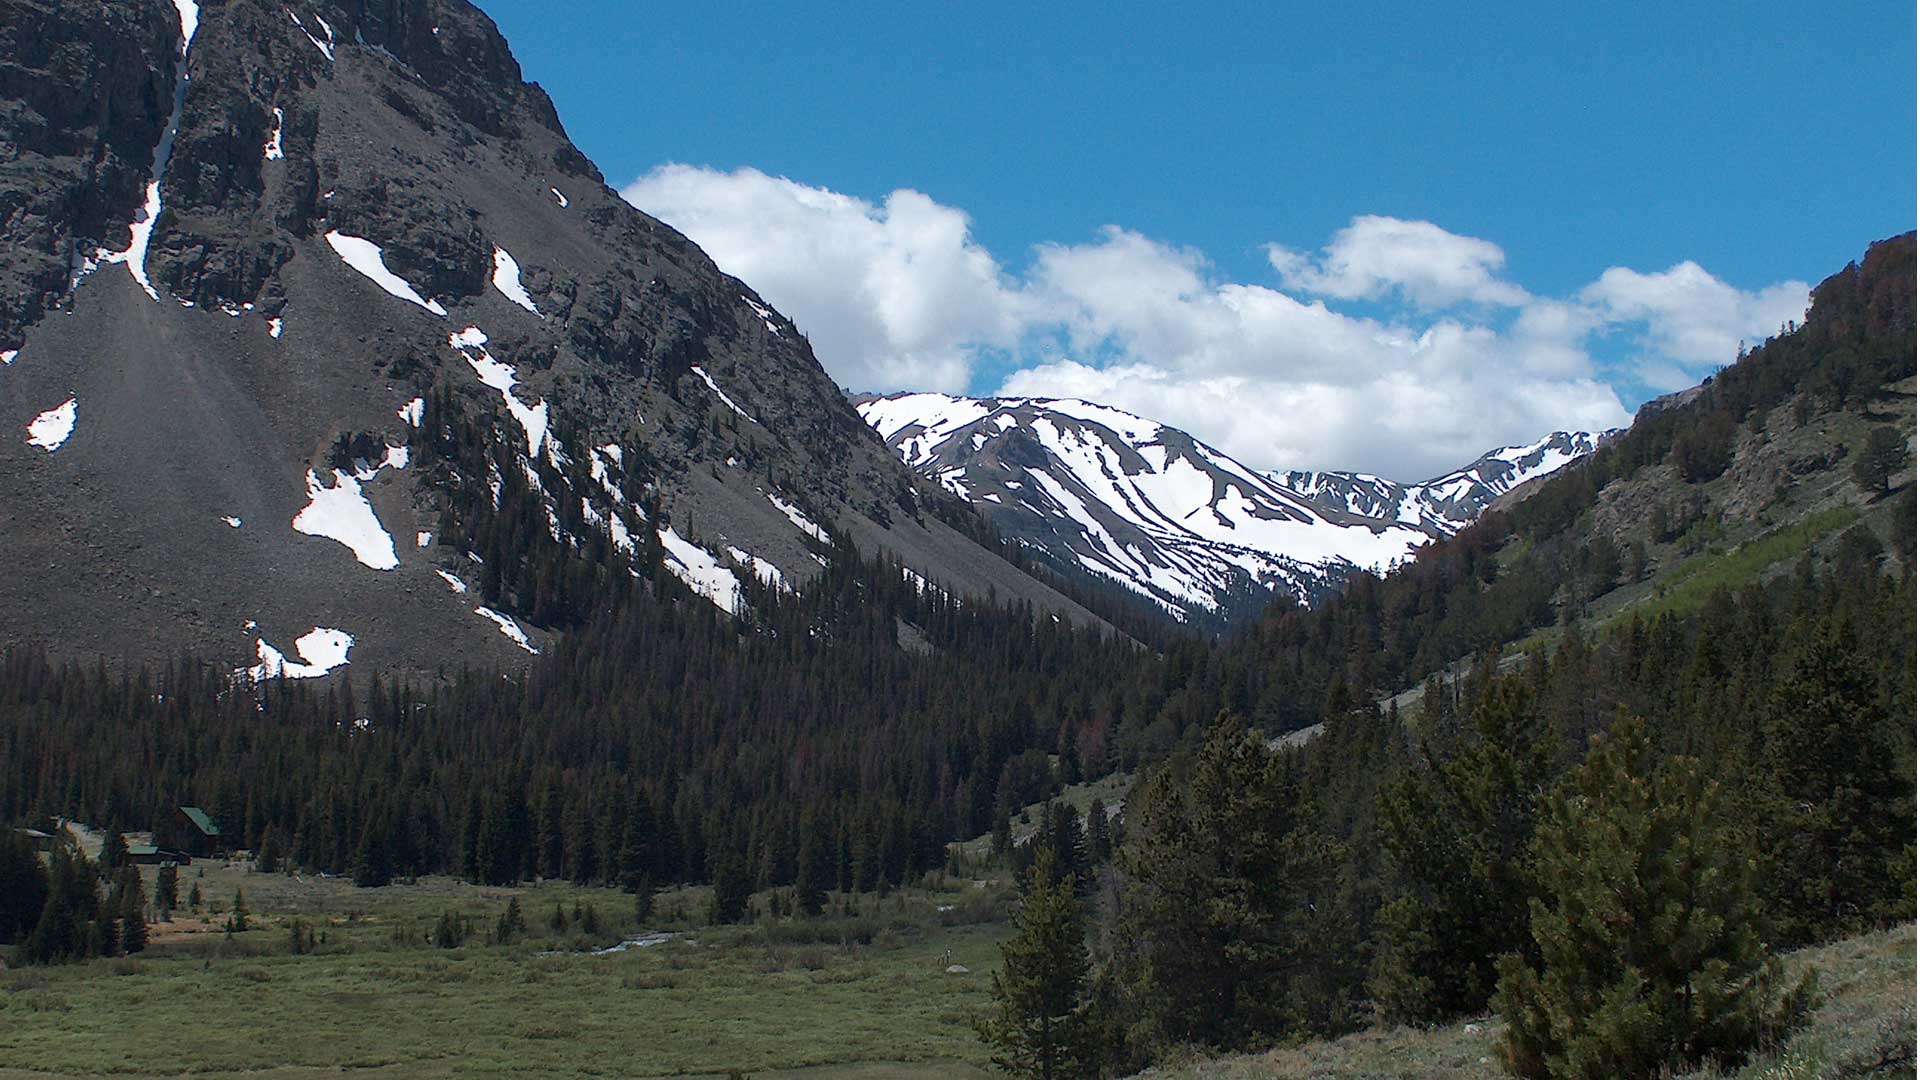 Absaroka Mountain Range - Visit Meeteetse, Wyoming!